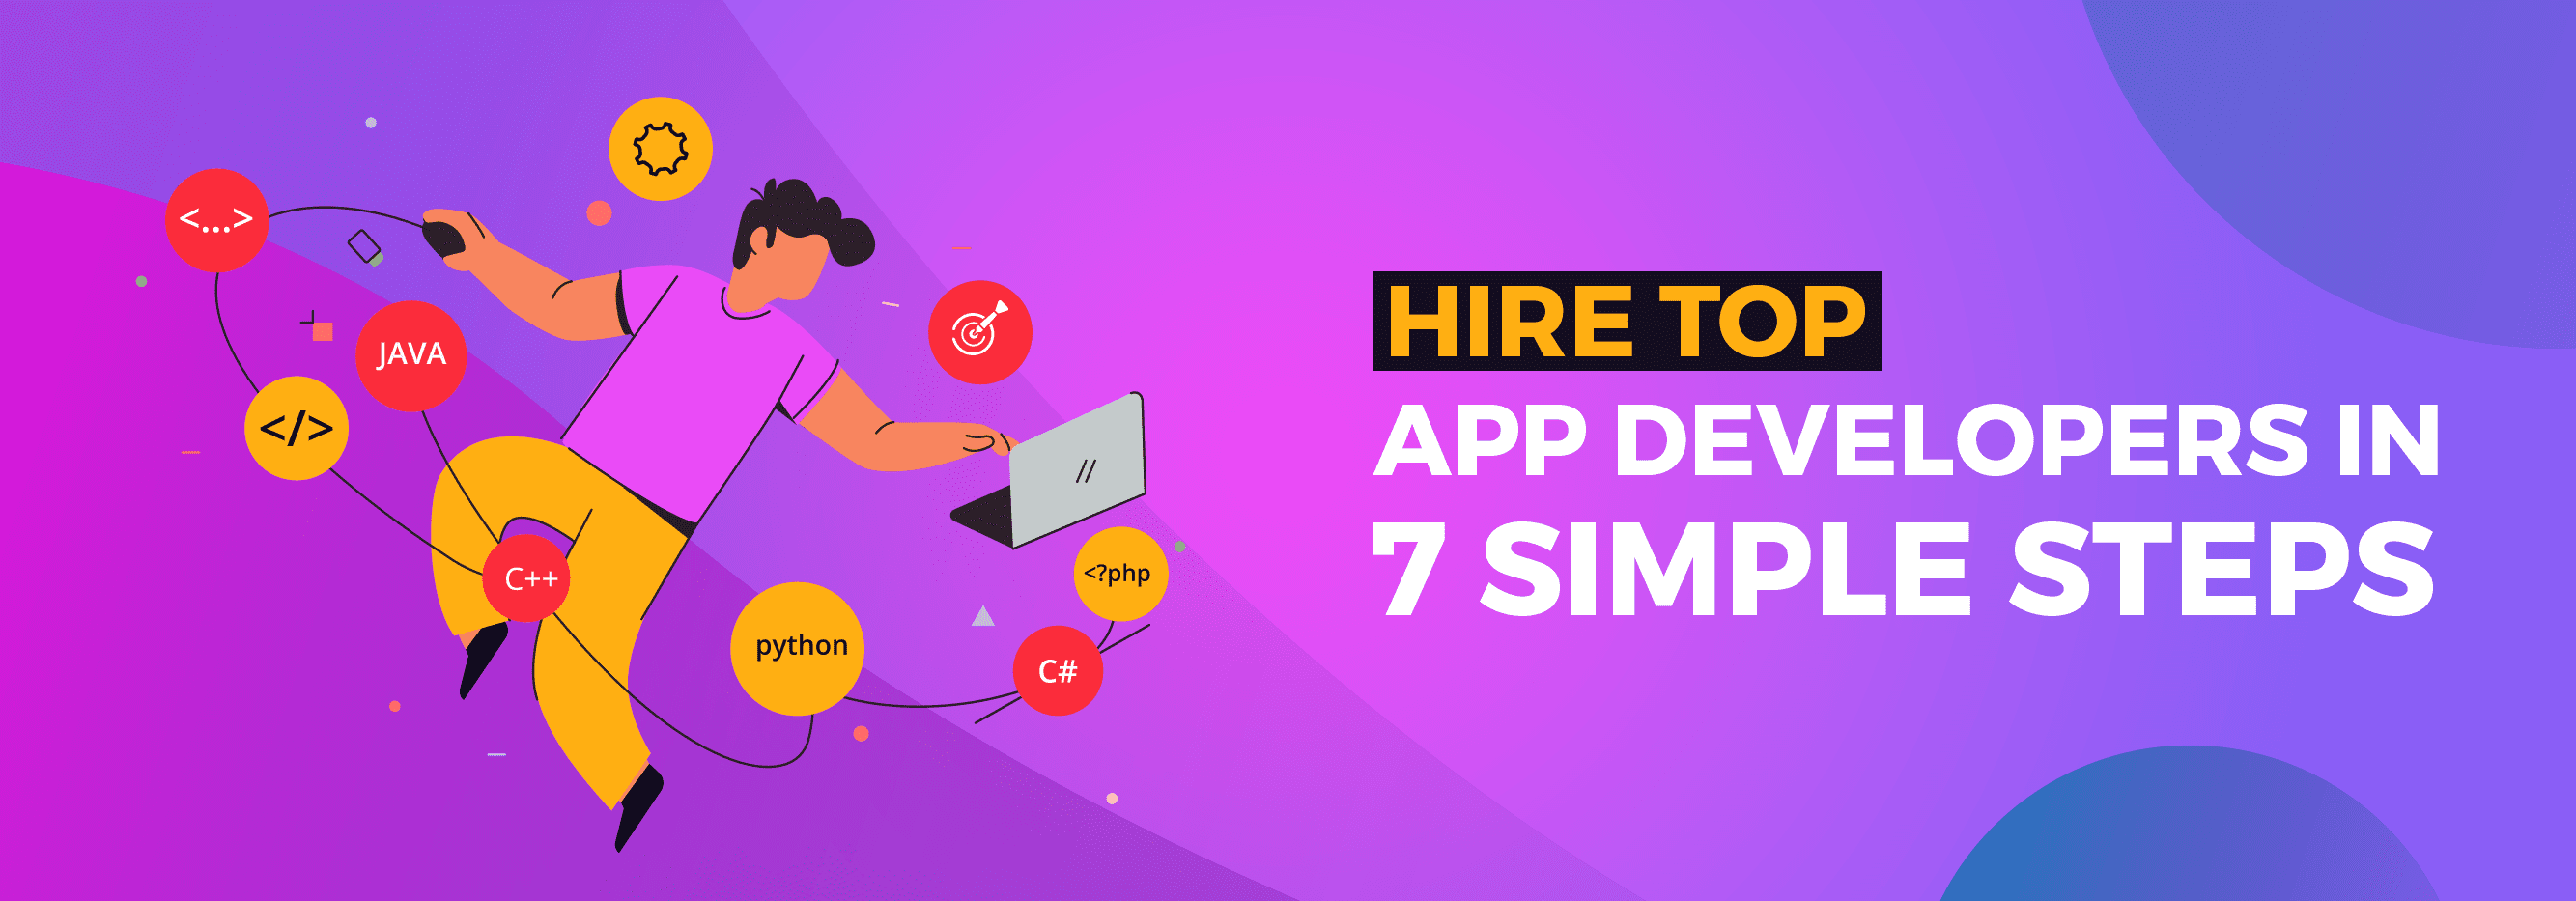 Hire an App Developer